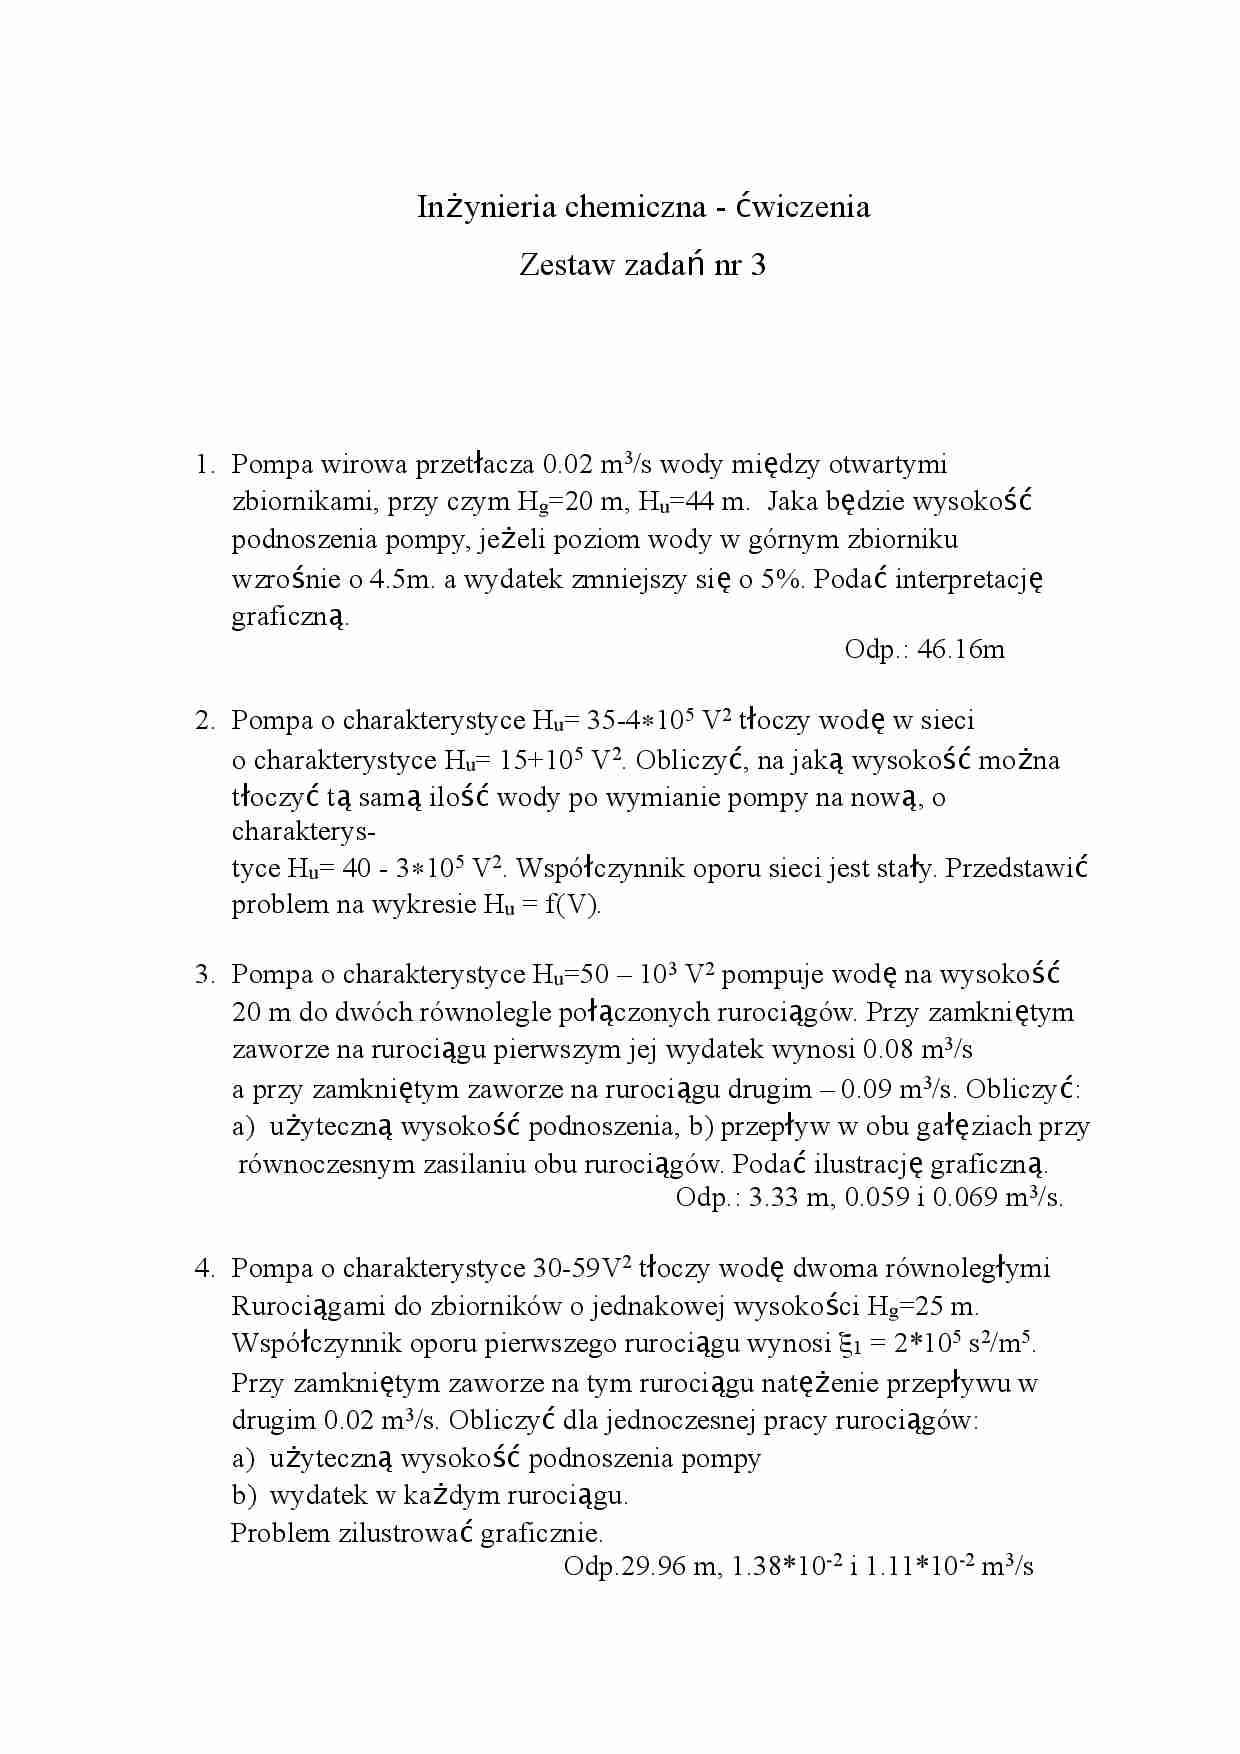 Inżynieria chemiczna- zestaw zadań nr 3 - strona 1